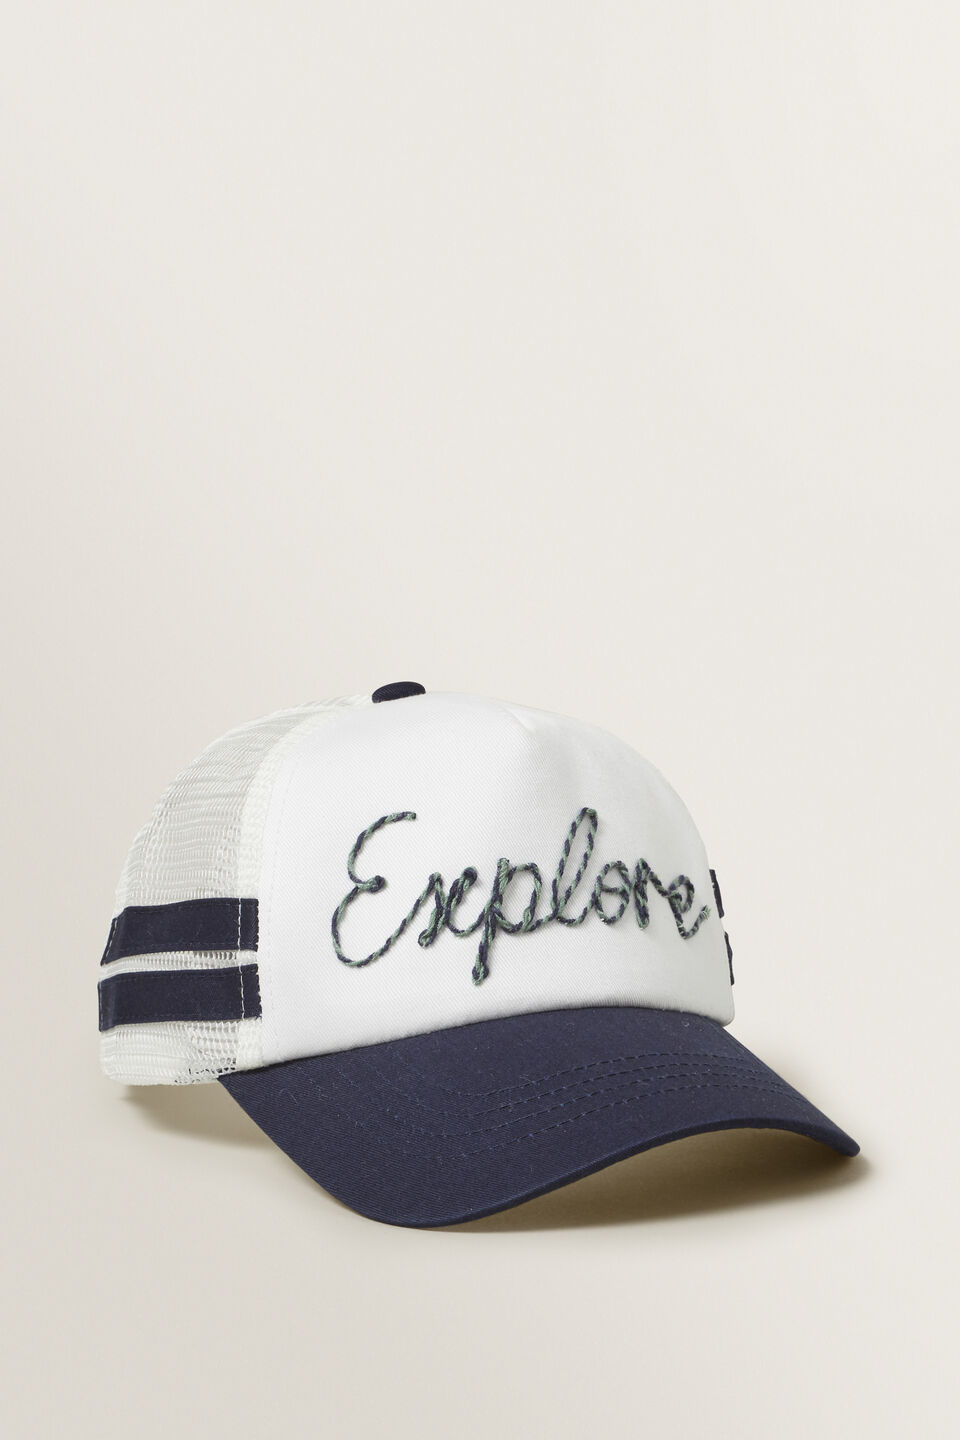 Explore Cap  